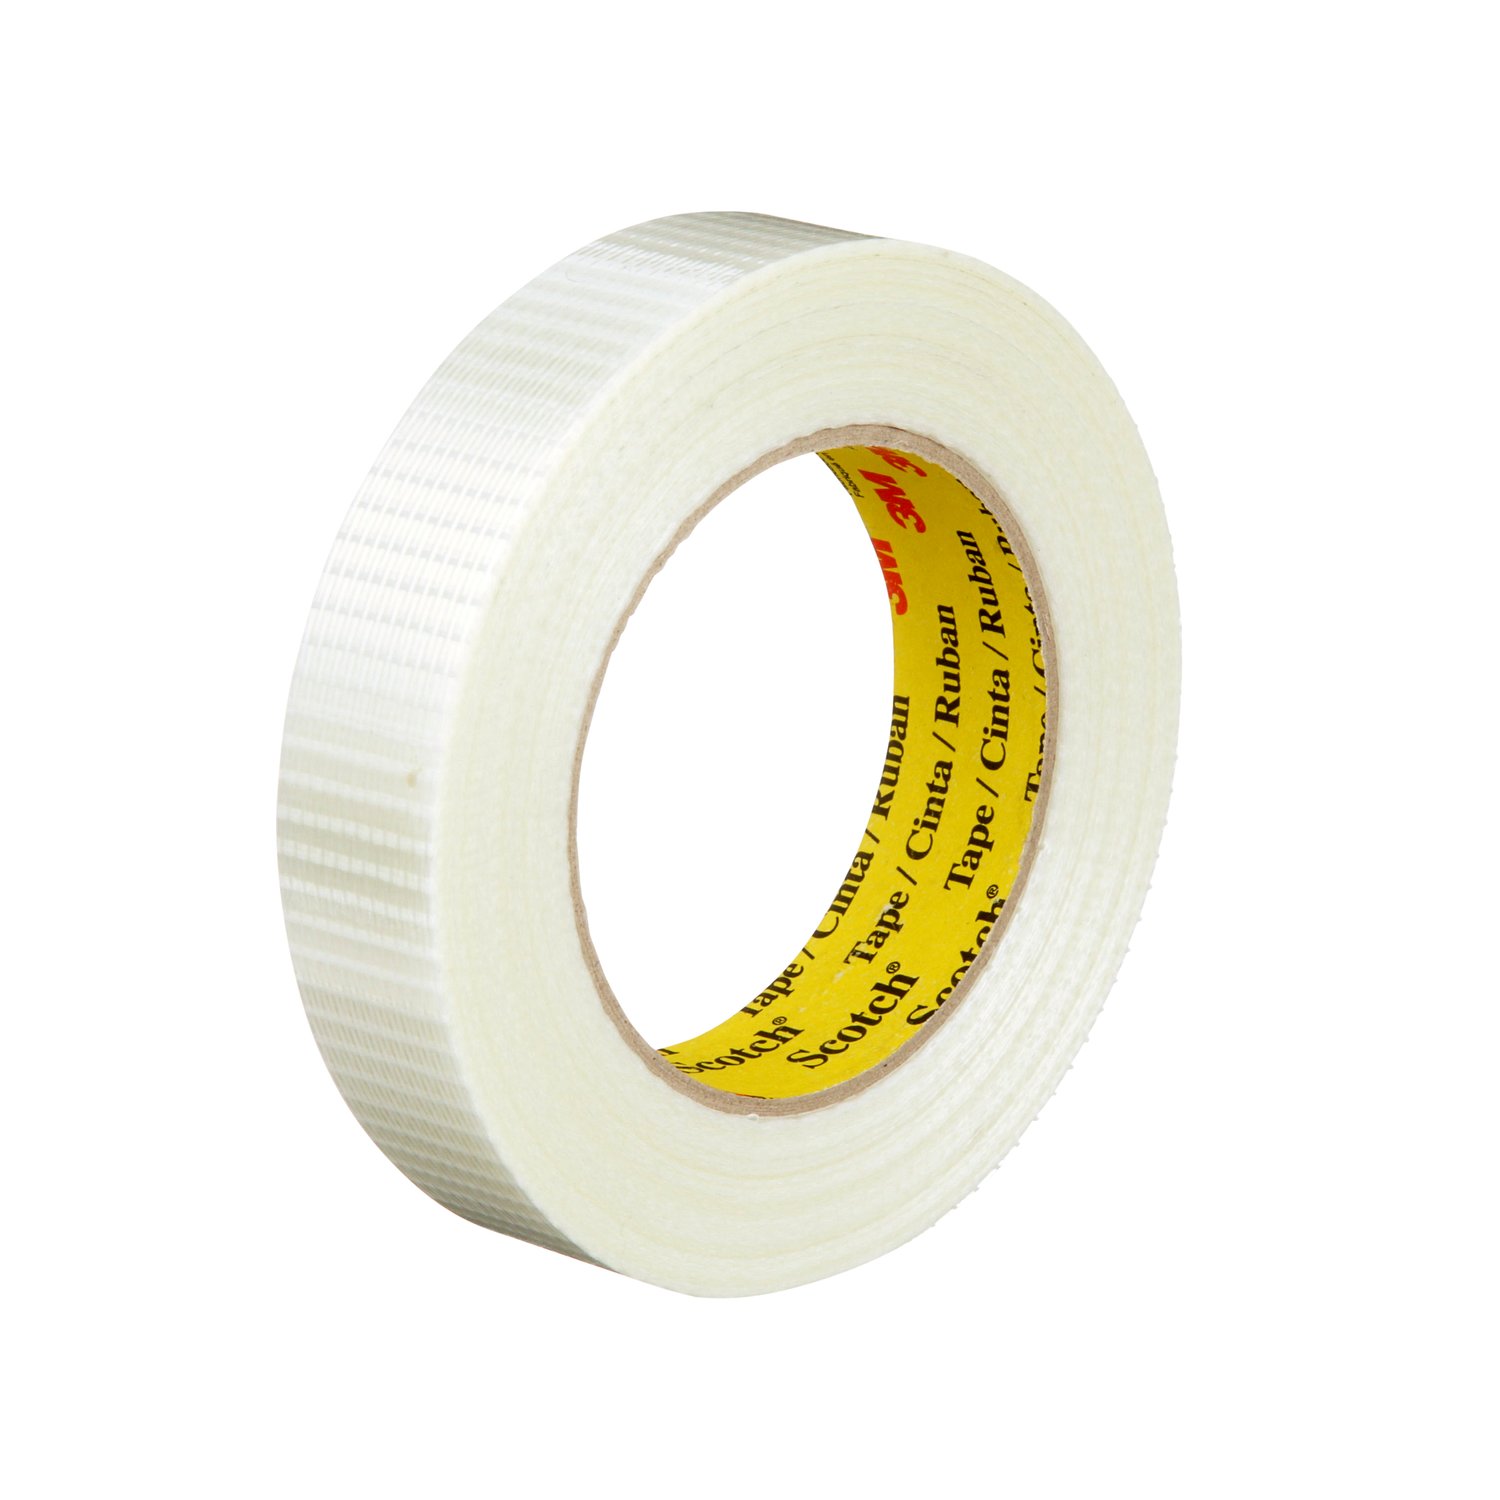 7000096084 - Scotch Bi-Directional Filament Tape 8959, Clear, 19 mm x 50 m, 5.7 mil,
48 rolls per case